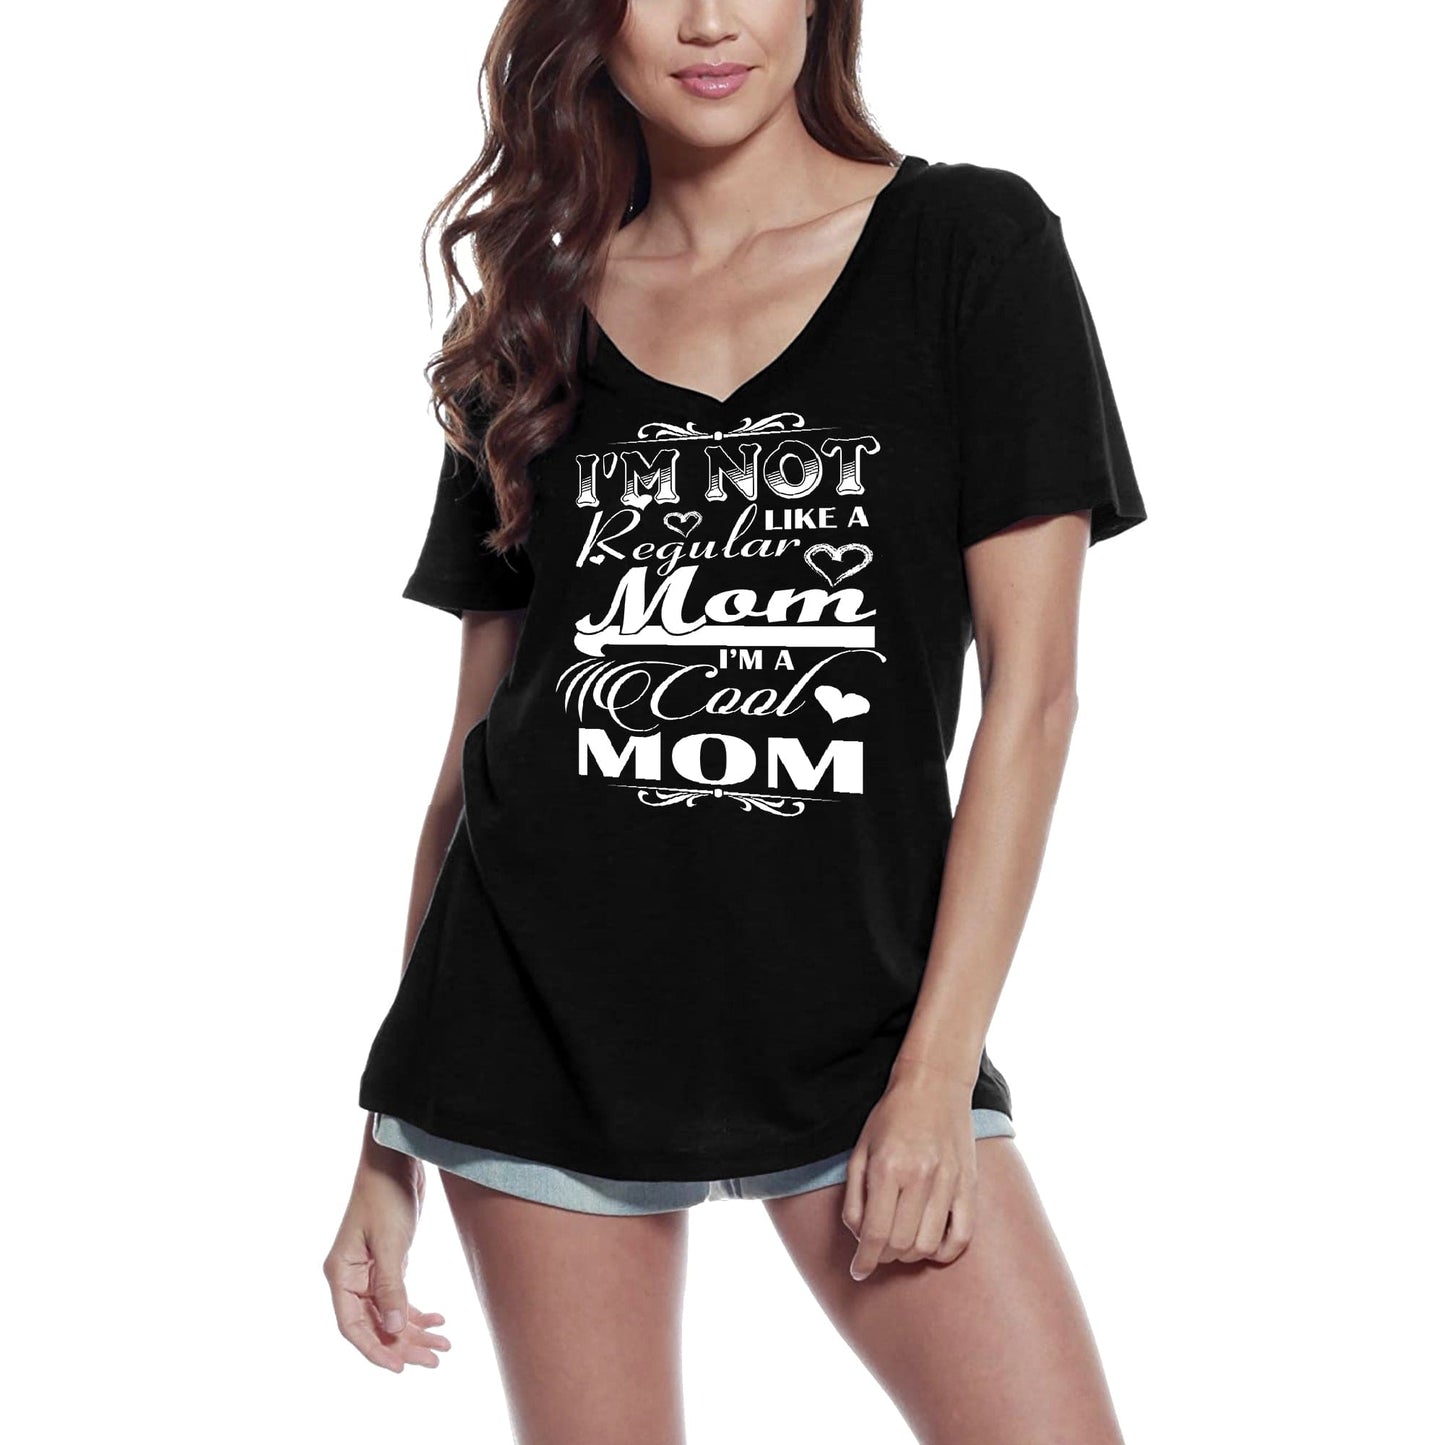 ULTRABASIC Women's T-Shirt I'm Not Like a Regular Mom - Cool Mother Short Sleeve Tee Shirt